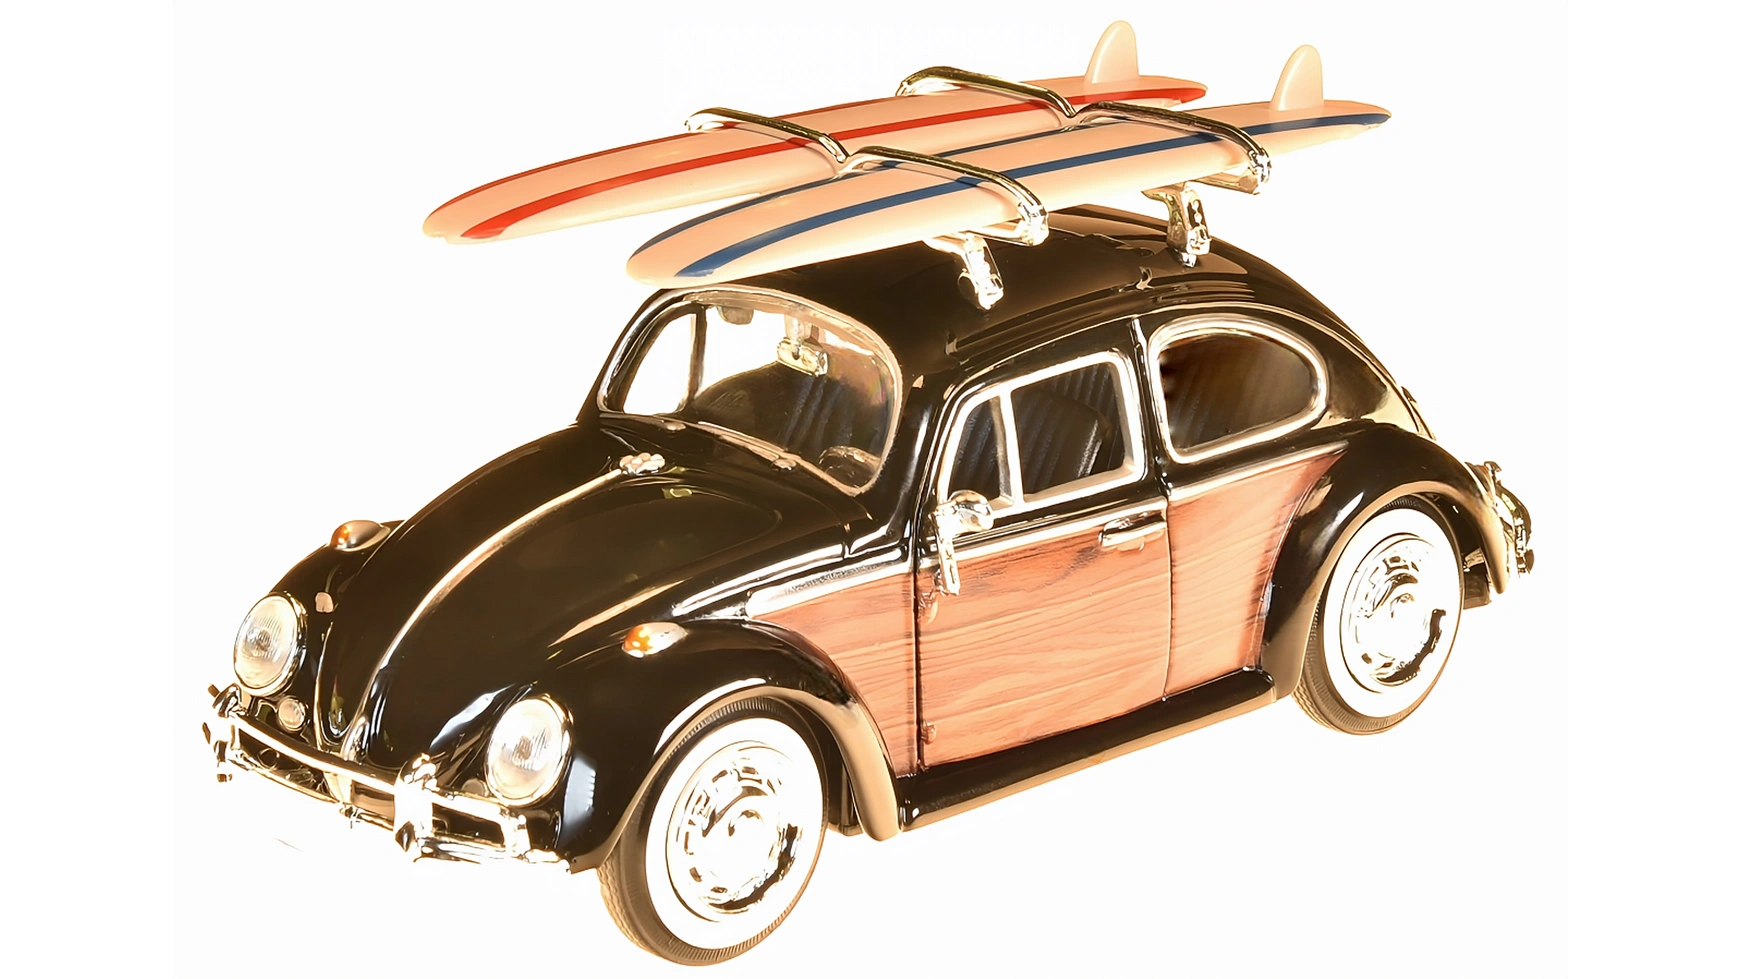 Motor Max VW Beetle Woody с досками для серфинга 1:24 набор jada toys tmnt hwr vw drag beetle w michelangelo figure 34018 1959 vw drag beetle